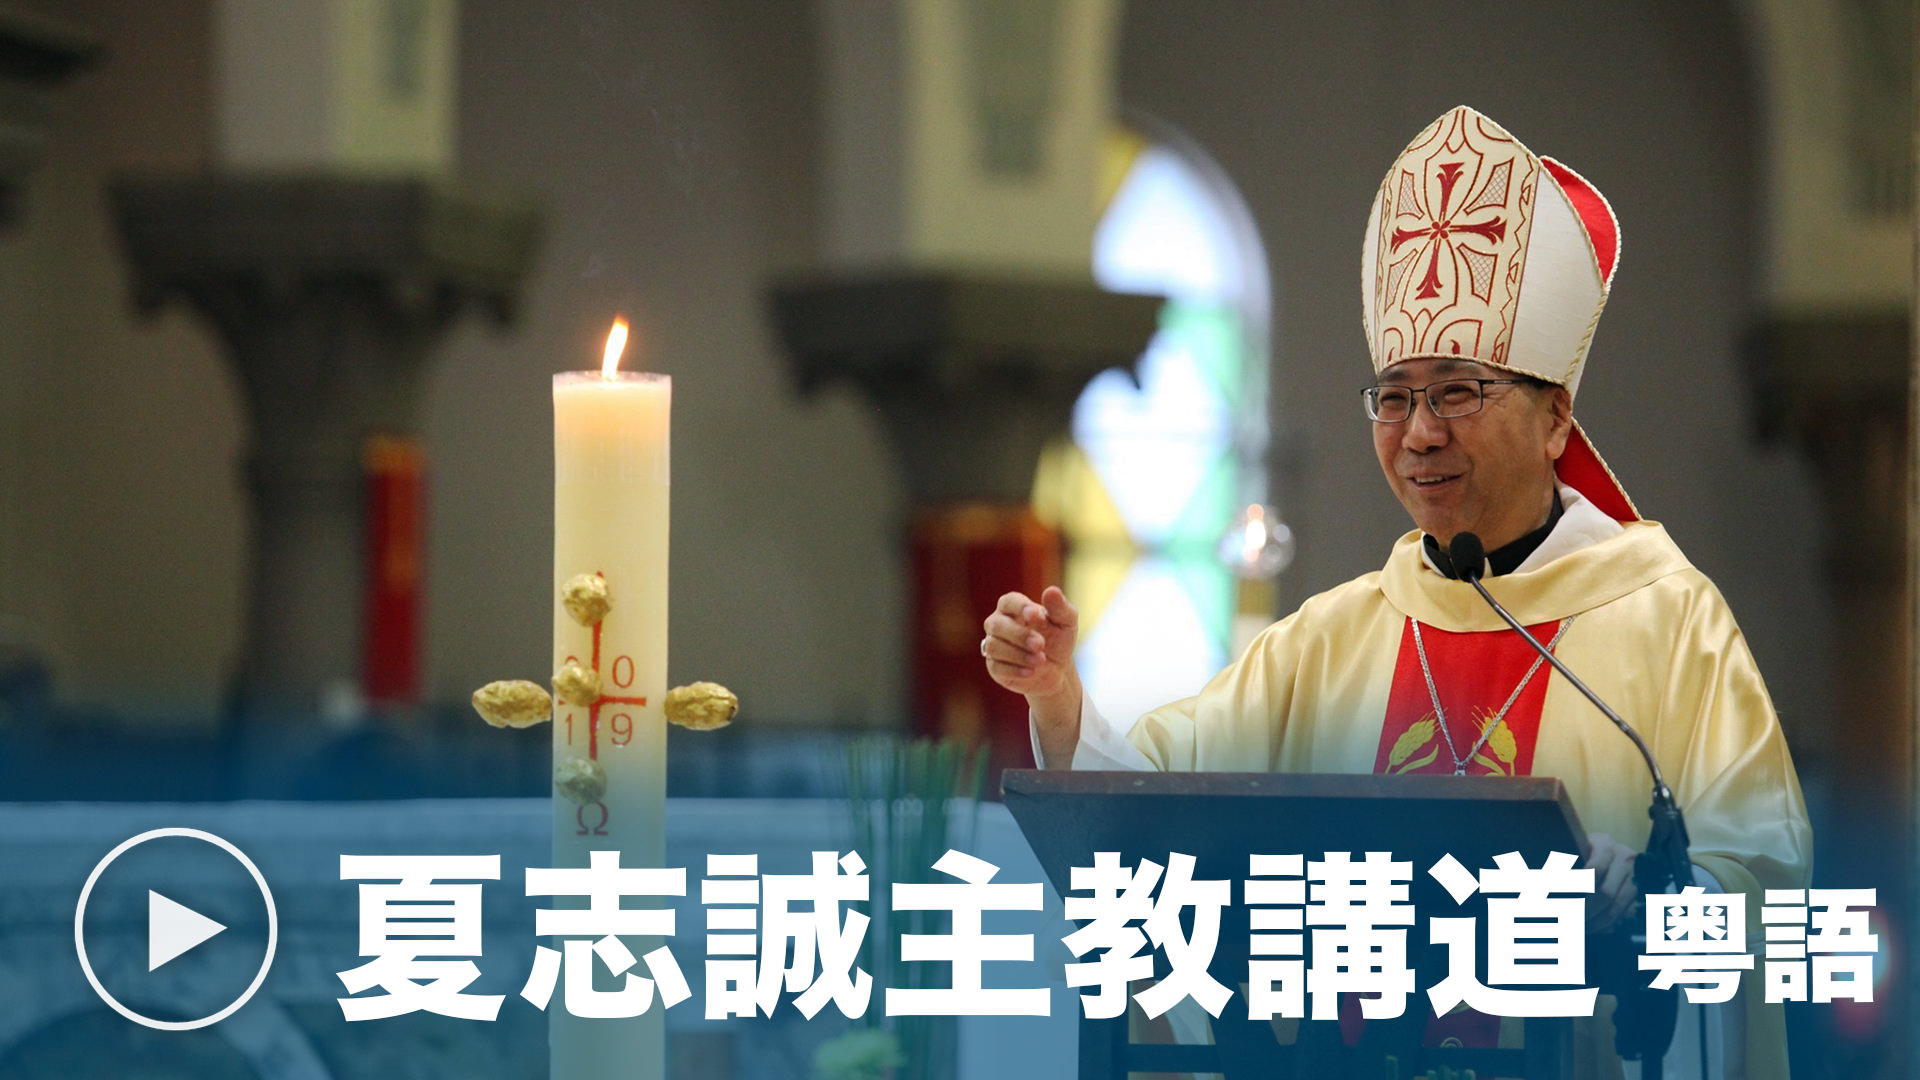 粤語主日彌撒講道 - 由天主教香港教區夏志誠輔理主教提供。